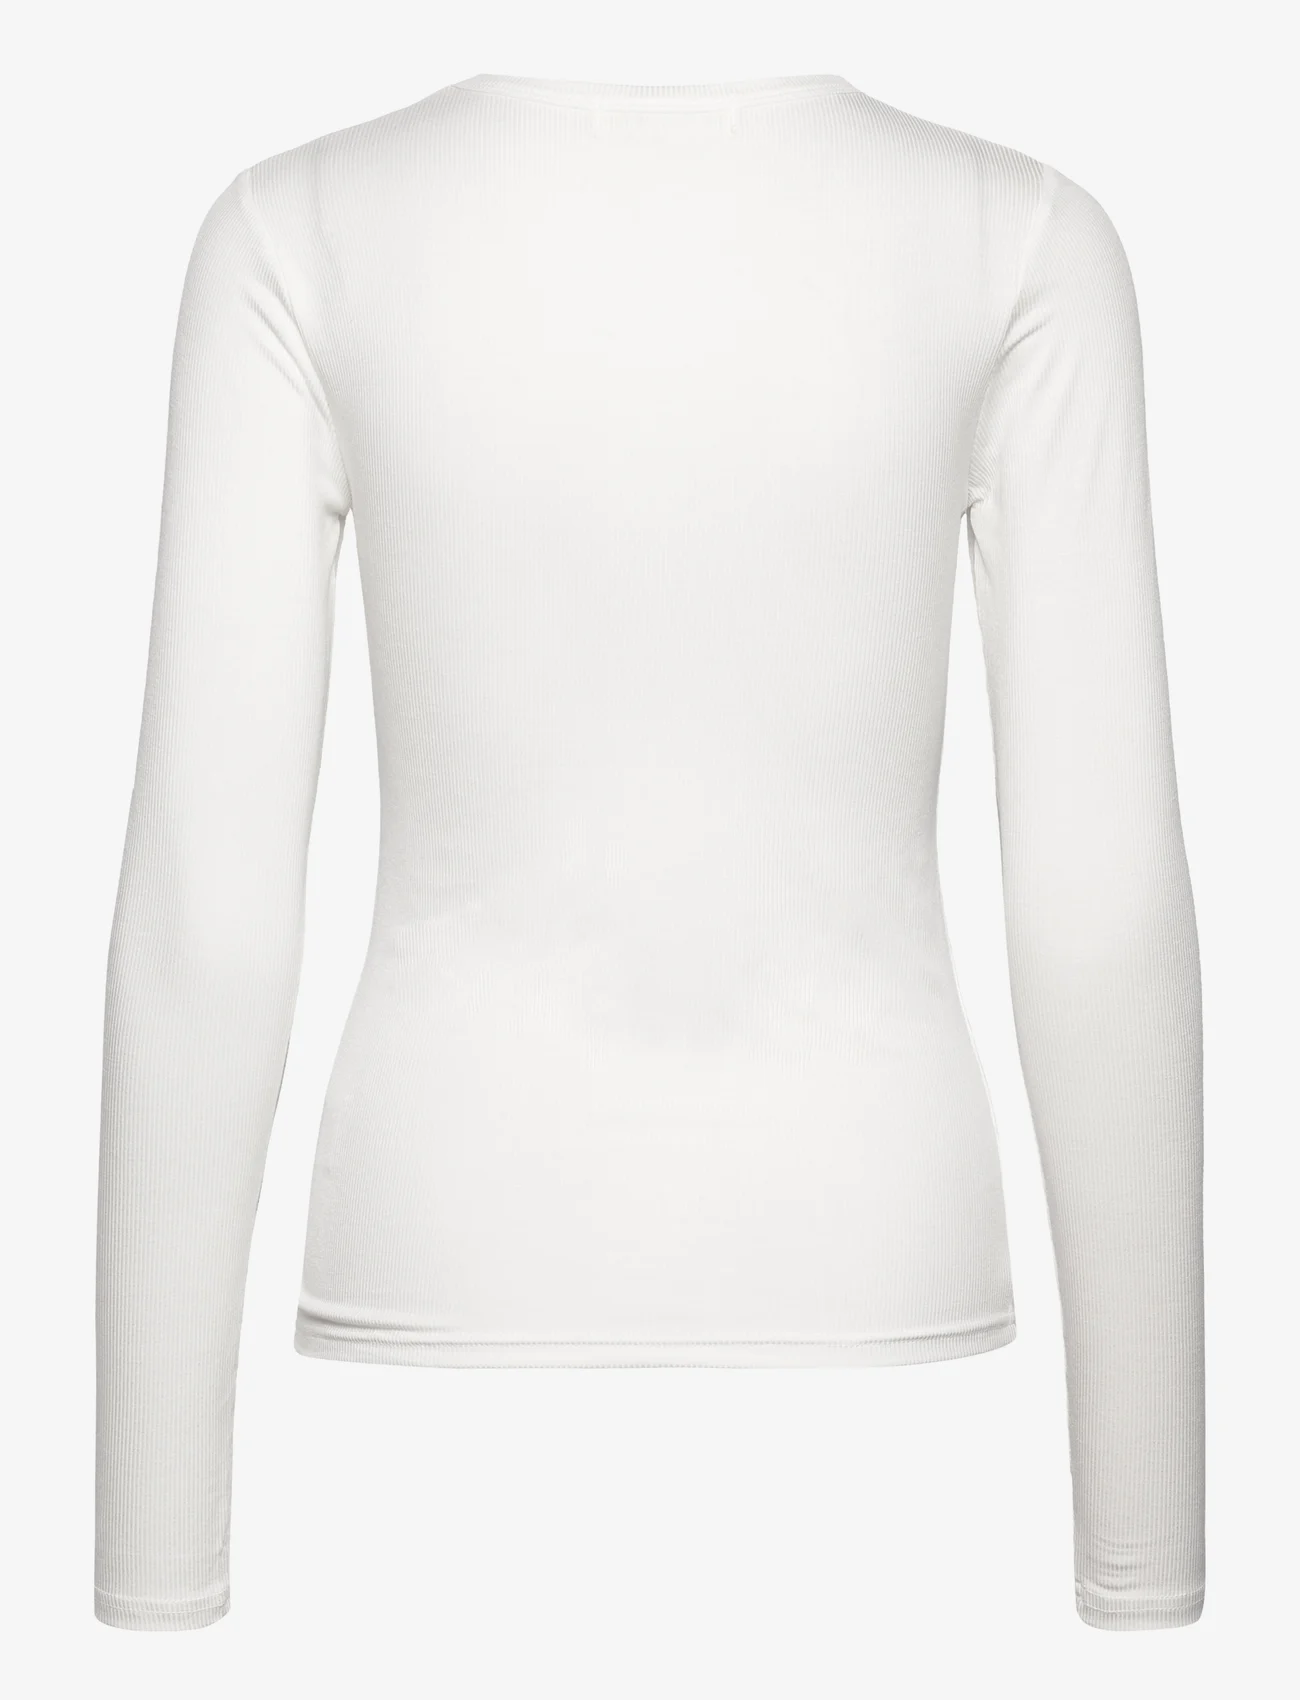 Sofie Schnoor - T-shirt long sleeve - laveste priser - white - 1